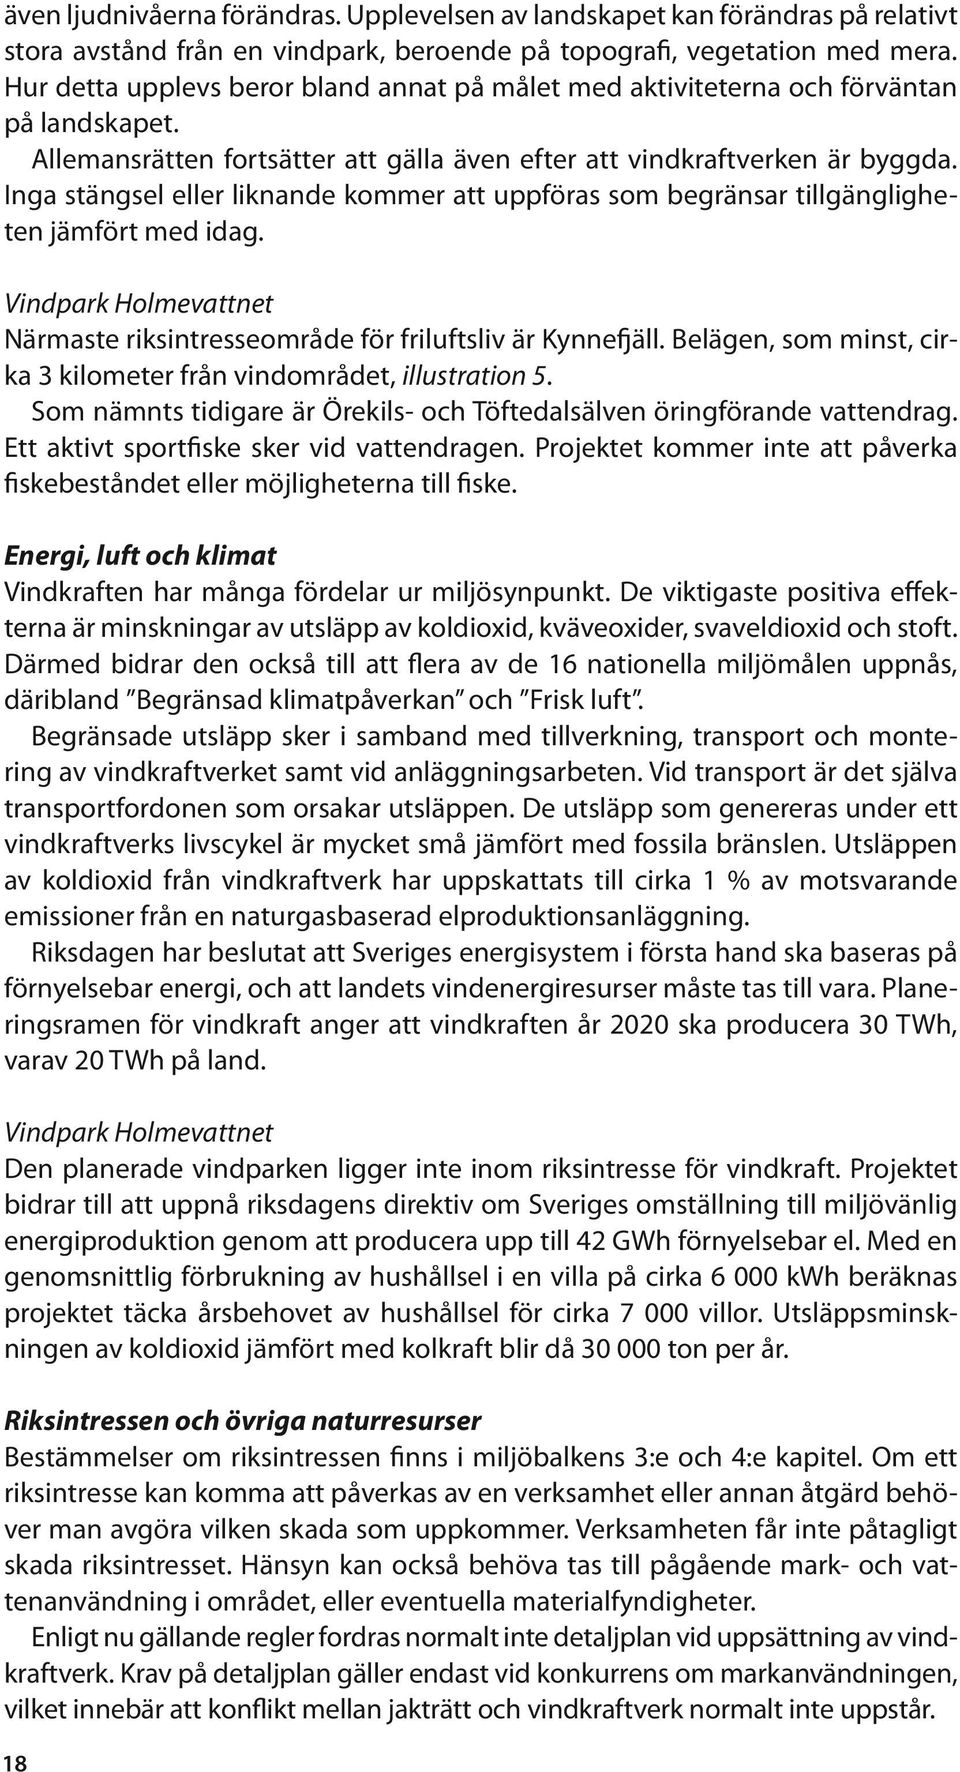 Inga stängsel eller liknande kommer att uppföras som begränsar tillgängligheten jämfört med idag. Vindpark Holmevattnet Närmaste riksintresseområde för friluftsliv är Kynnefjäll.